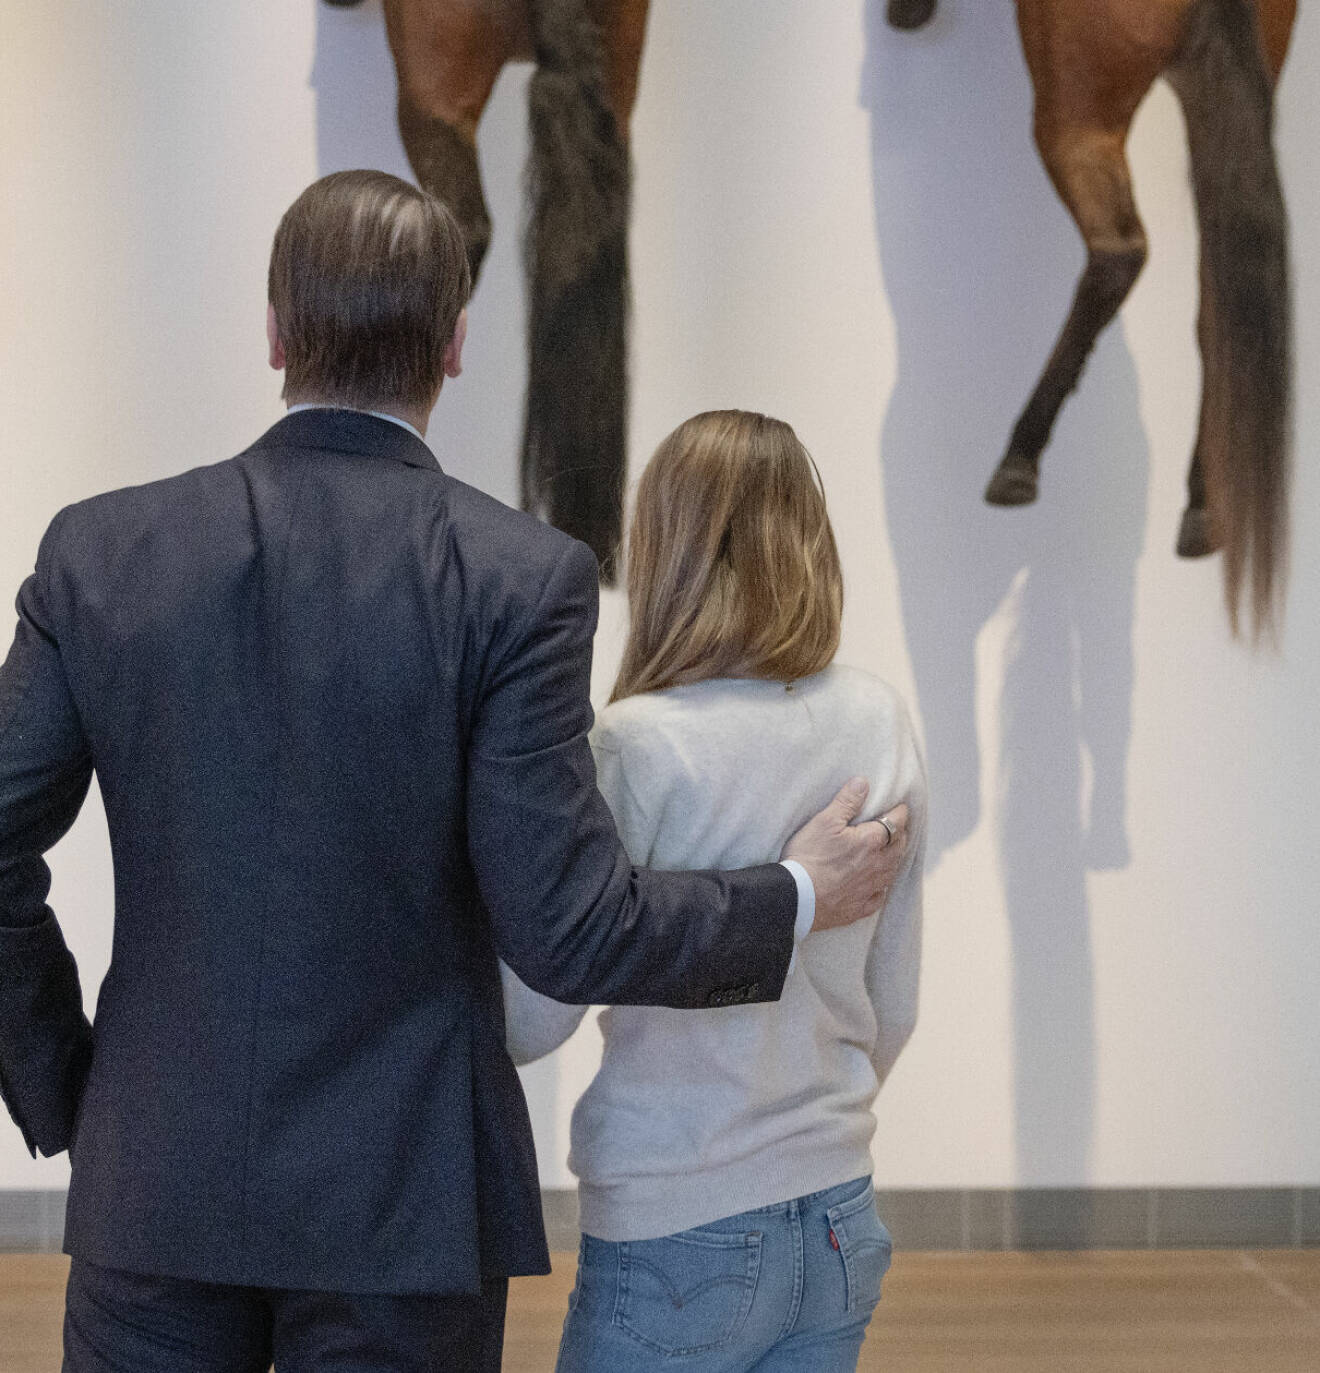 Prinsessan Estelle och prins Daniel i utställningen Den tredje handen på Moderna museet i Stockholm